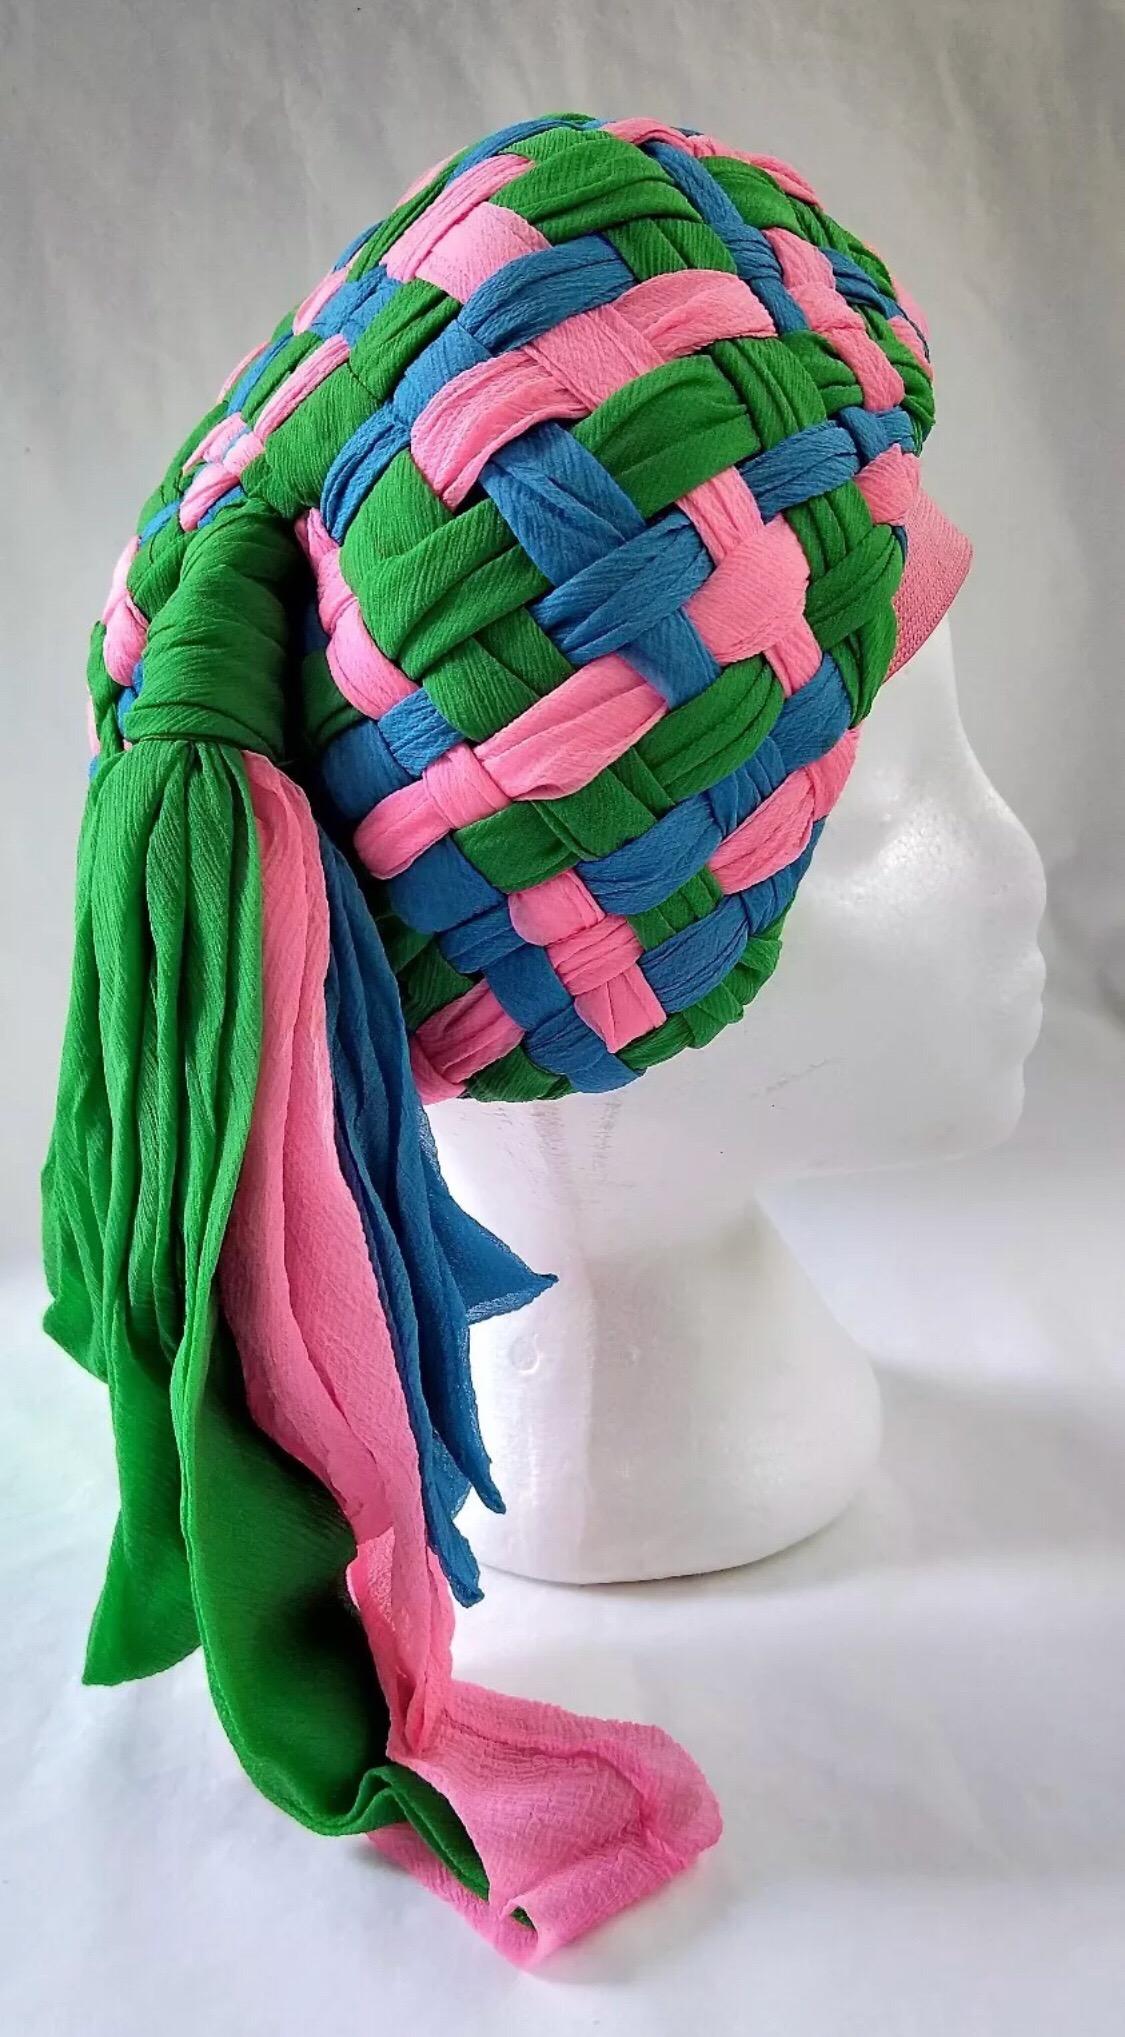 Schön konstruiert 1960's Mr Individual, Melbourne Turban Hut aus Chiffon, die in hot pink, smaragdgrün und blau mit einem Spaß Seite Quaste verflochten ist. Hergestellt für den Verkauf in Myers Melbourne Emporium von hoch angesehenen Milliner. Der